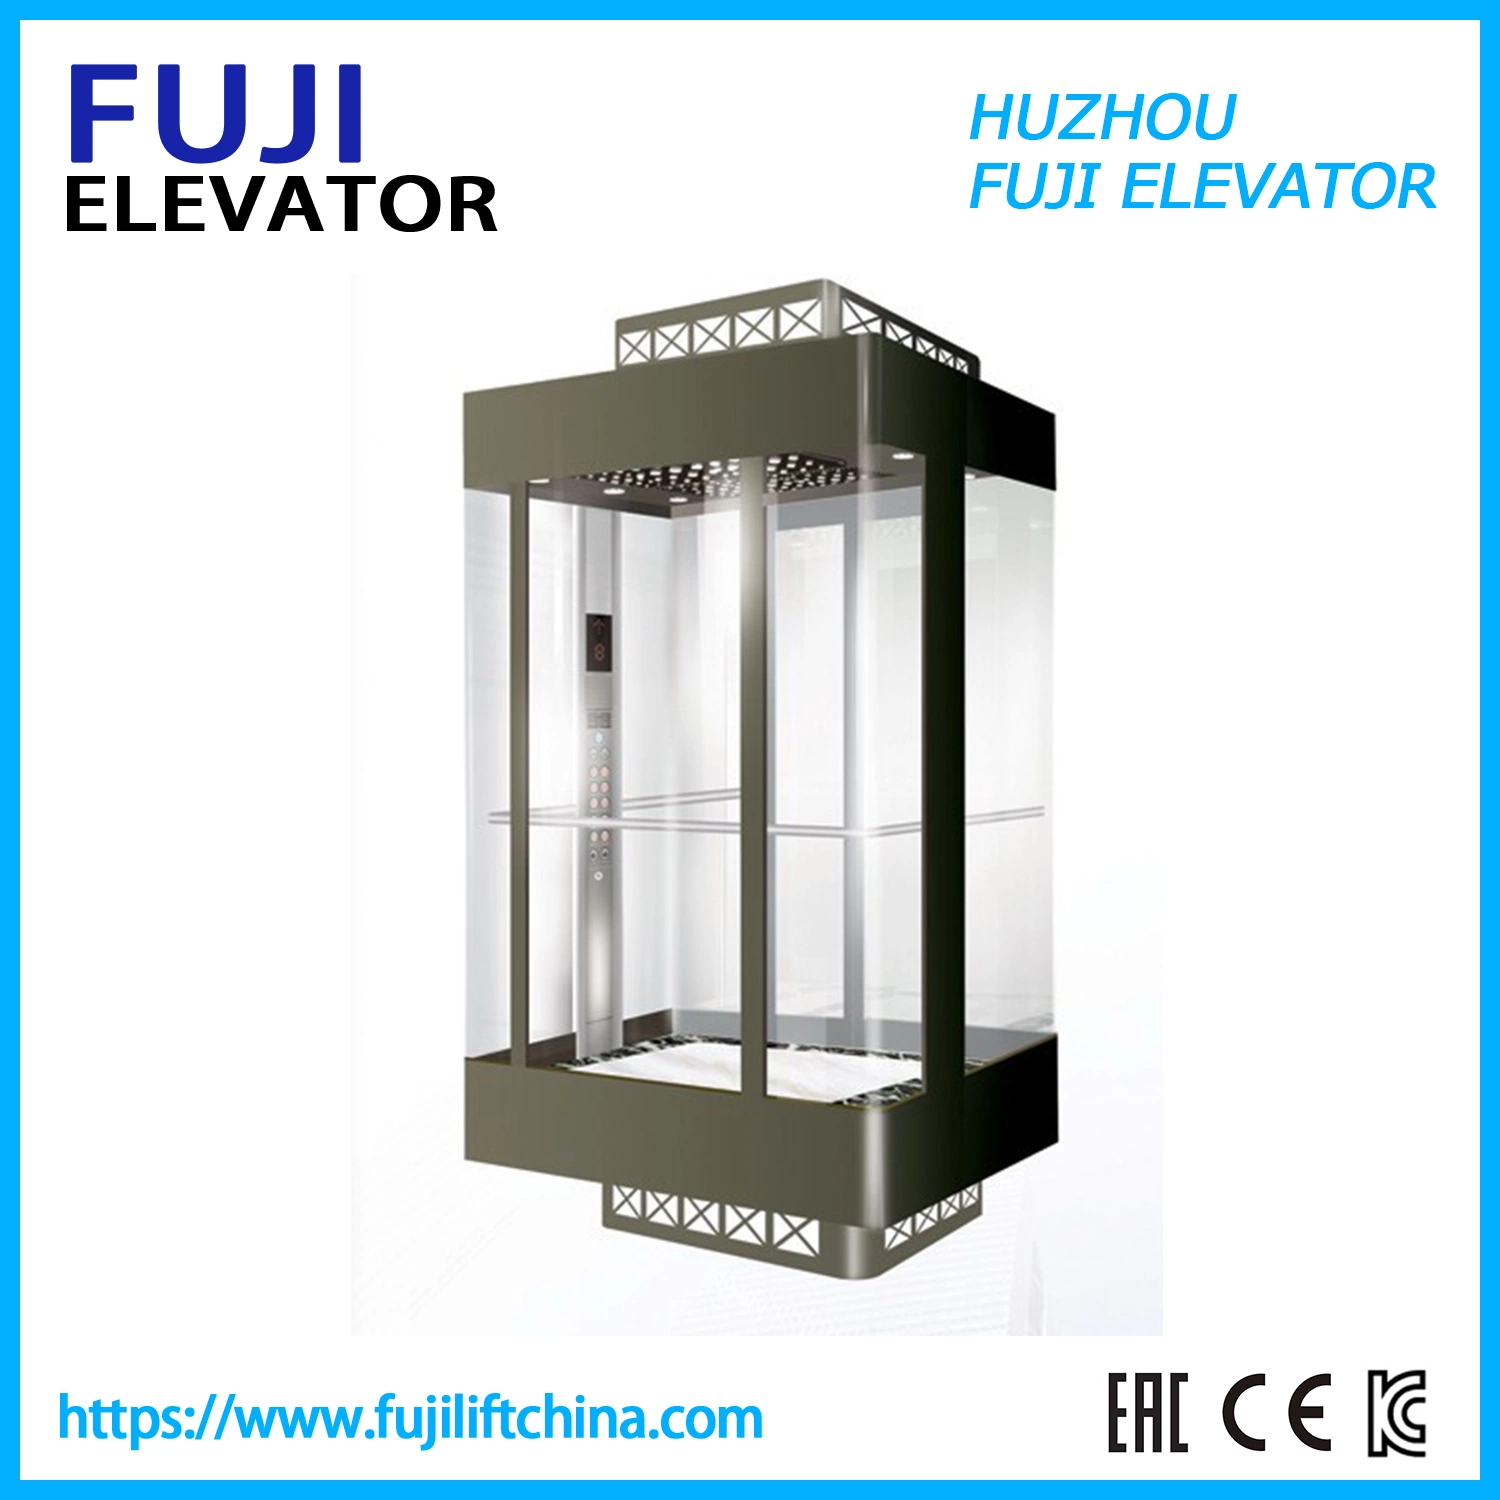 Aufzug Aufzug Aufzug Aufzug FUJI China Fabrik Panoramaaufzüge Mit Aufzug Tür Glas Sightseeing Home Aufzug Aufzüge